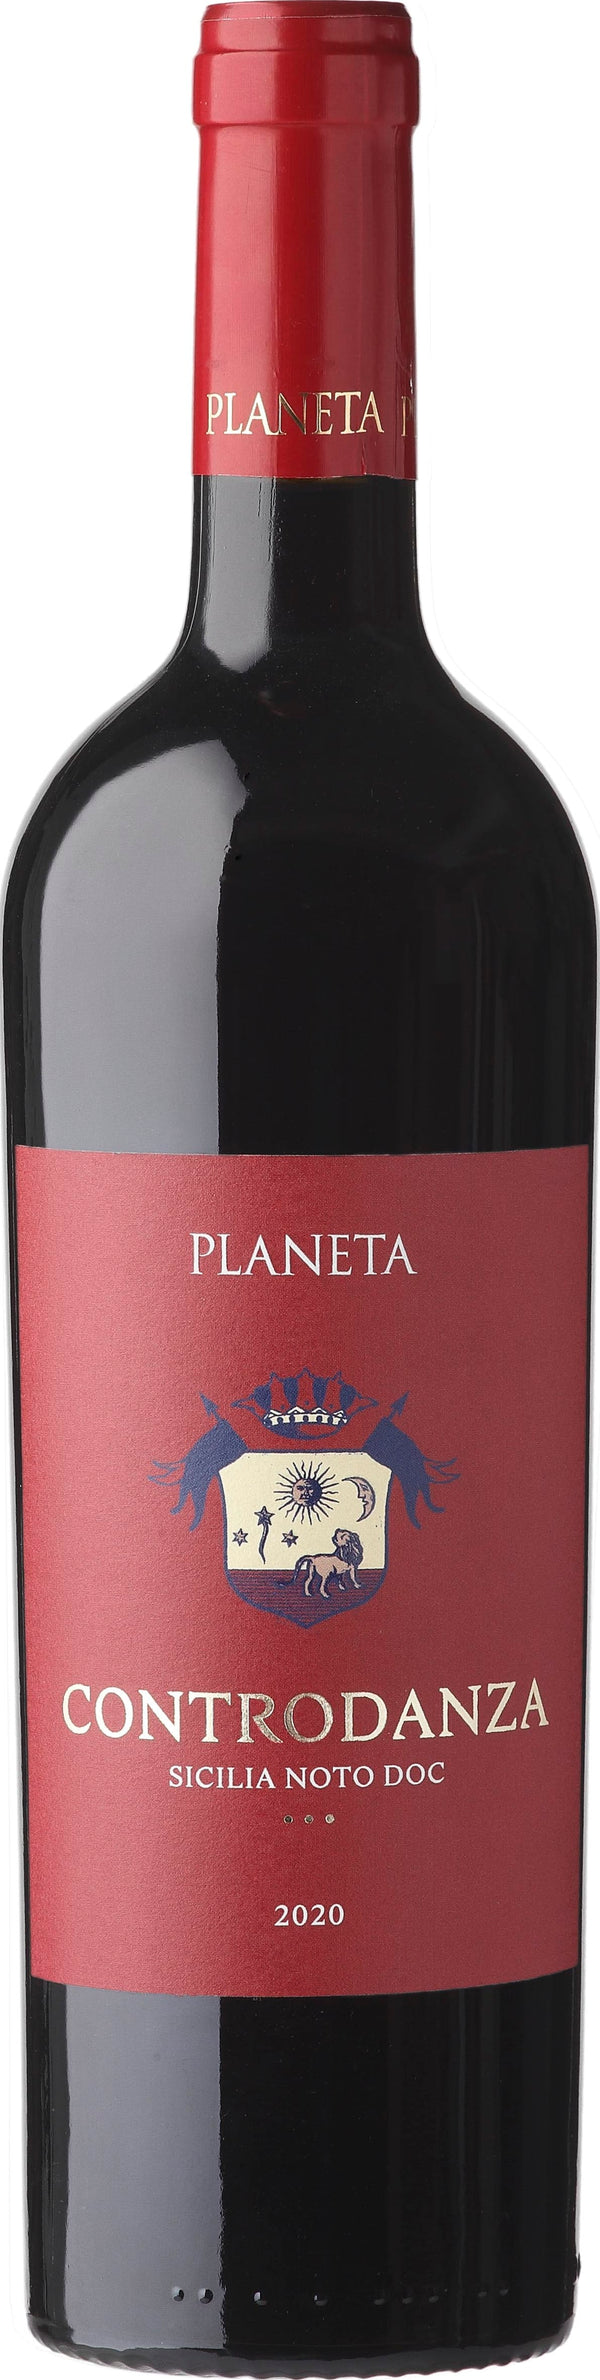 Planeta - Buonivini, Noto Controdanza DOC Noto 2020 6x75cl - Just Wines 